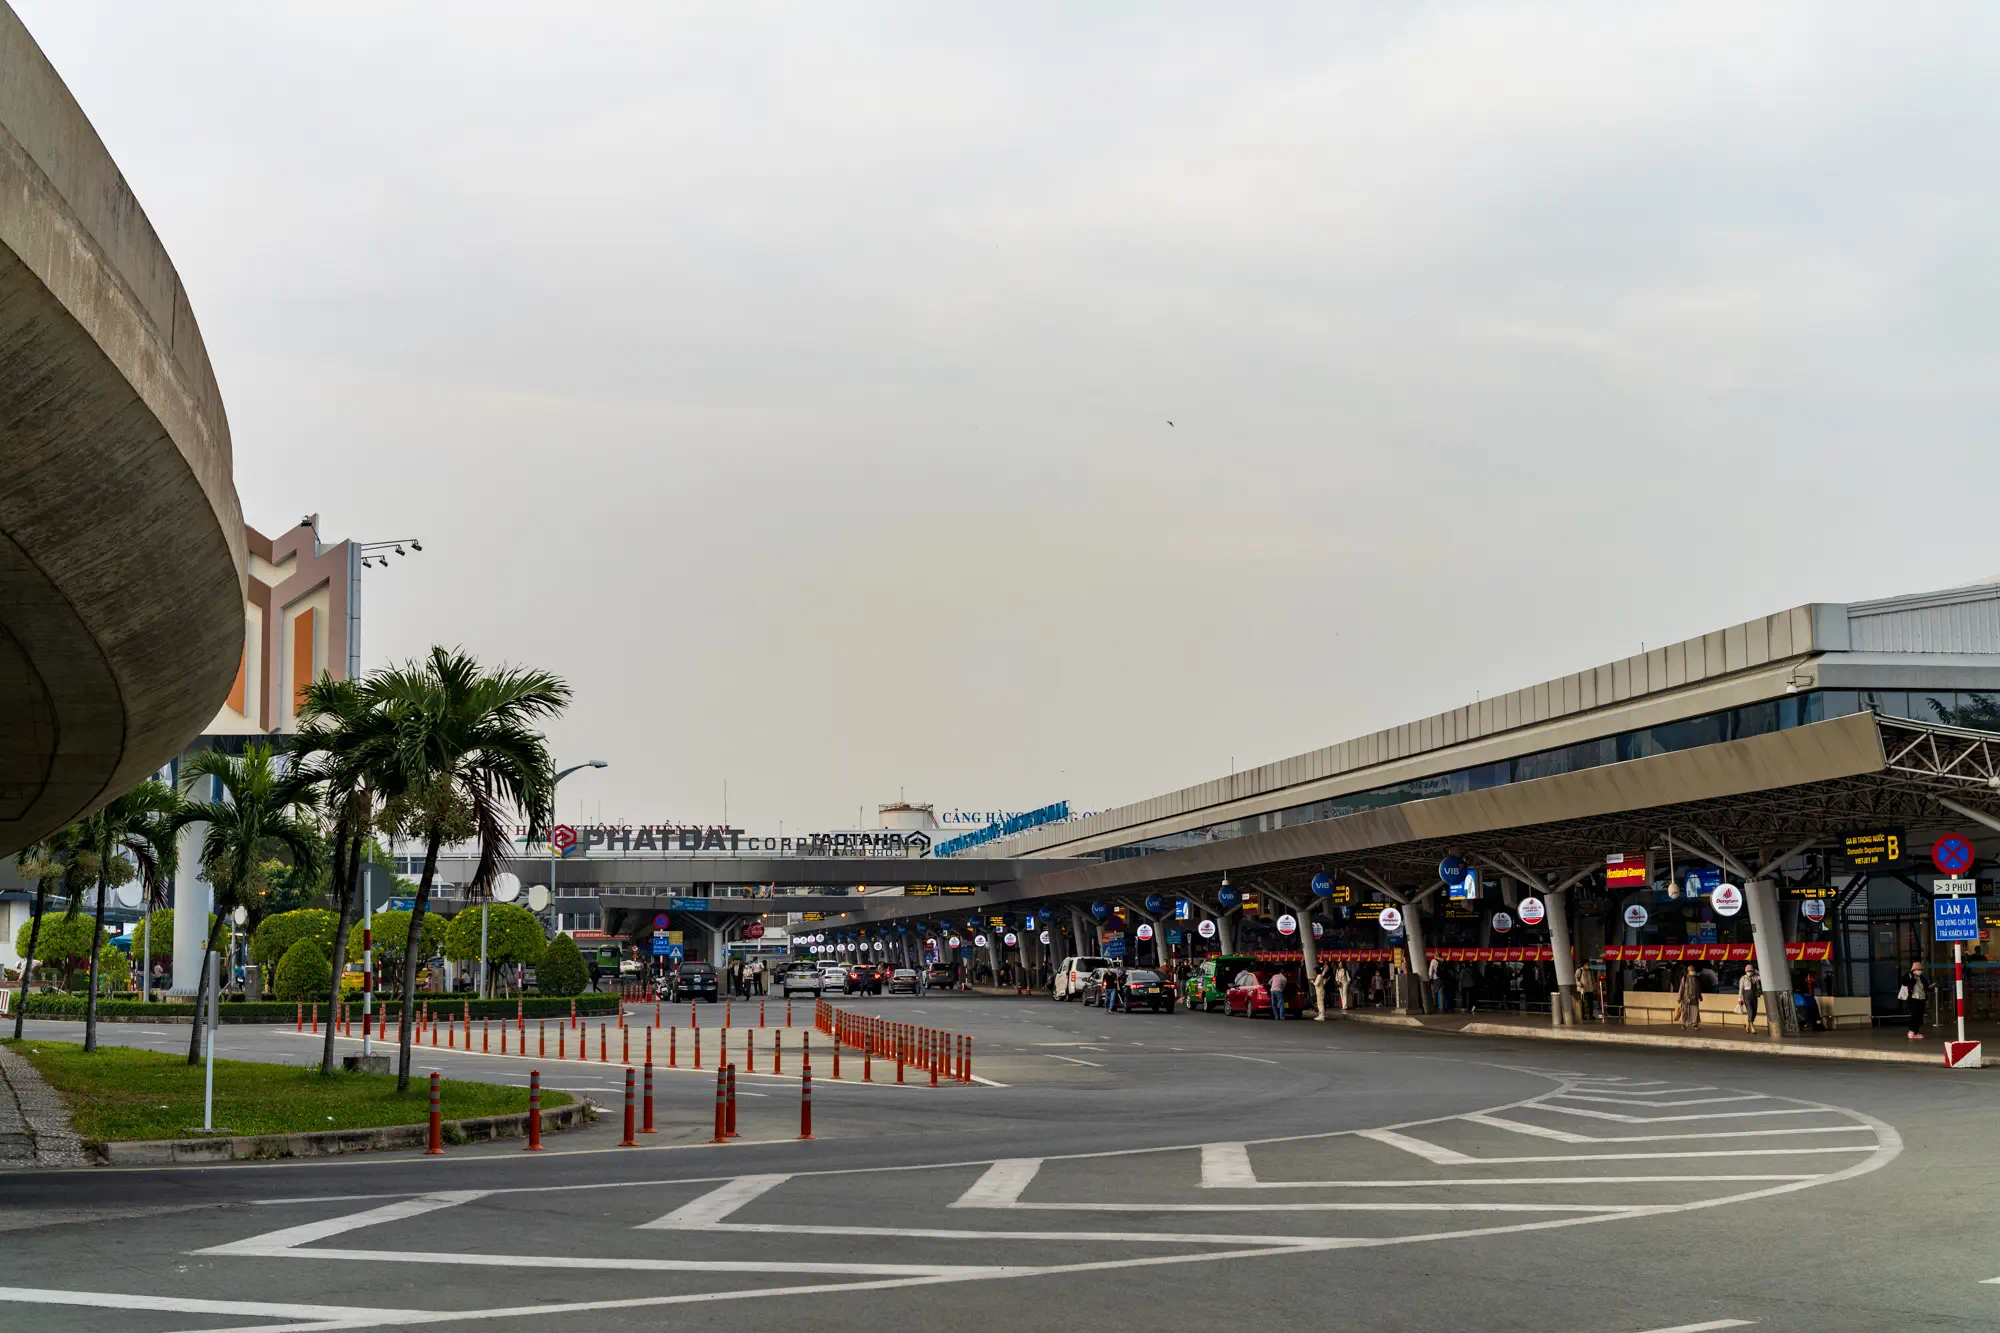 タンソンニャット国際空港の国内線ターミナル遠景。入り口の屋根とタクシーのピックアップレーン入り口が見える